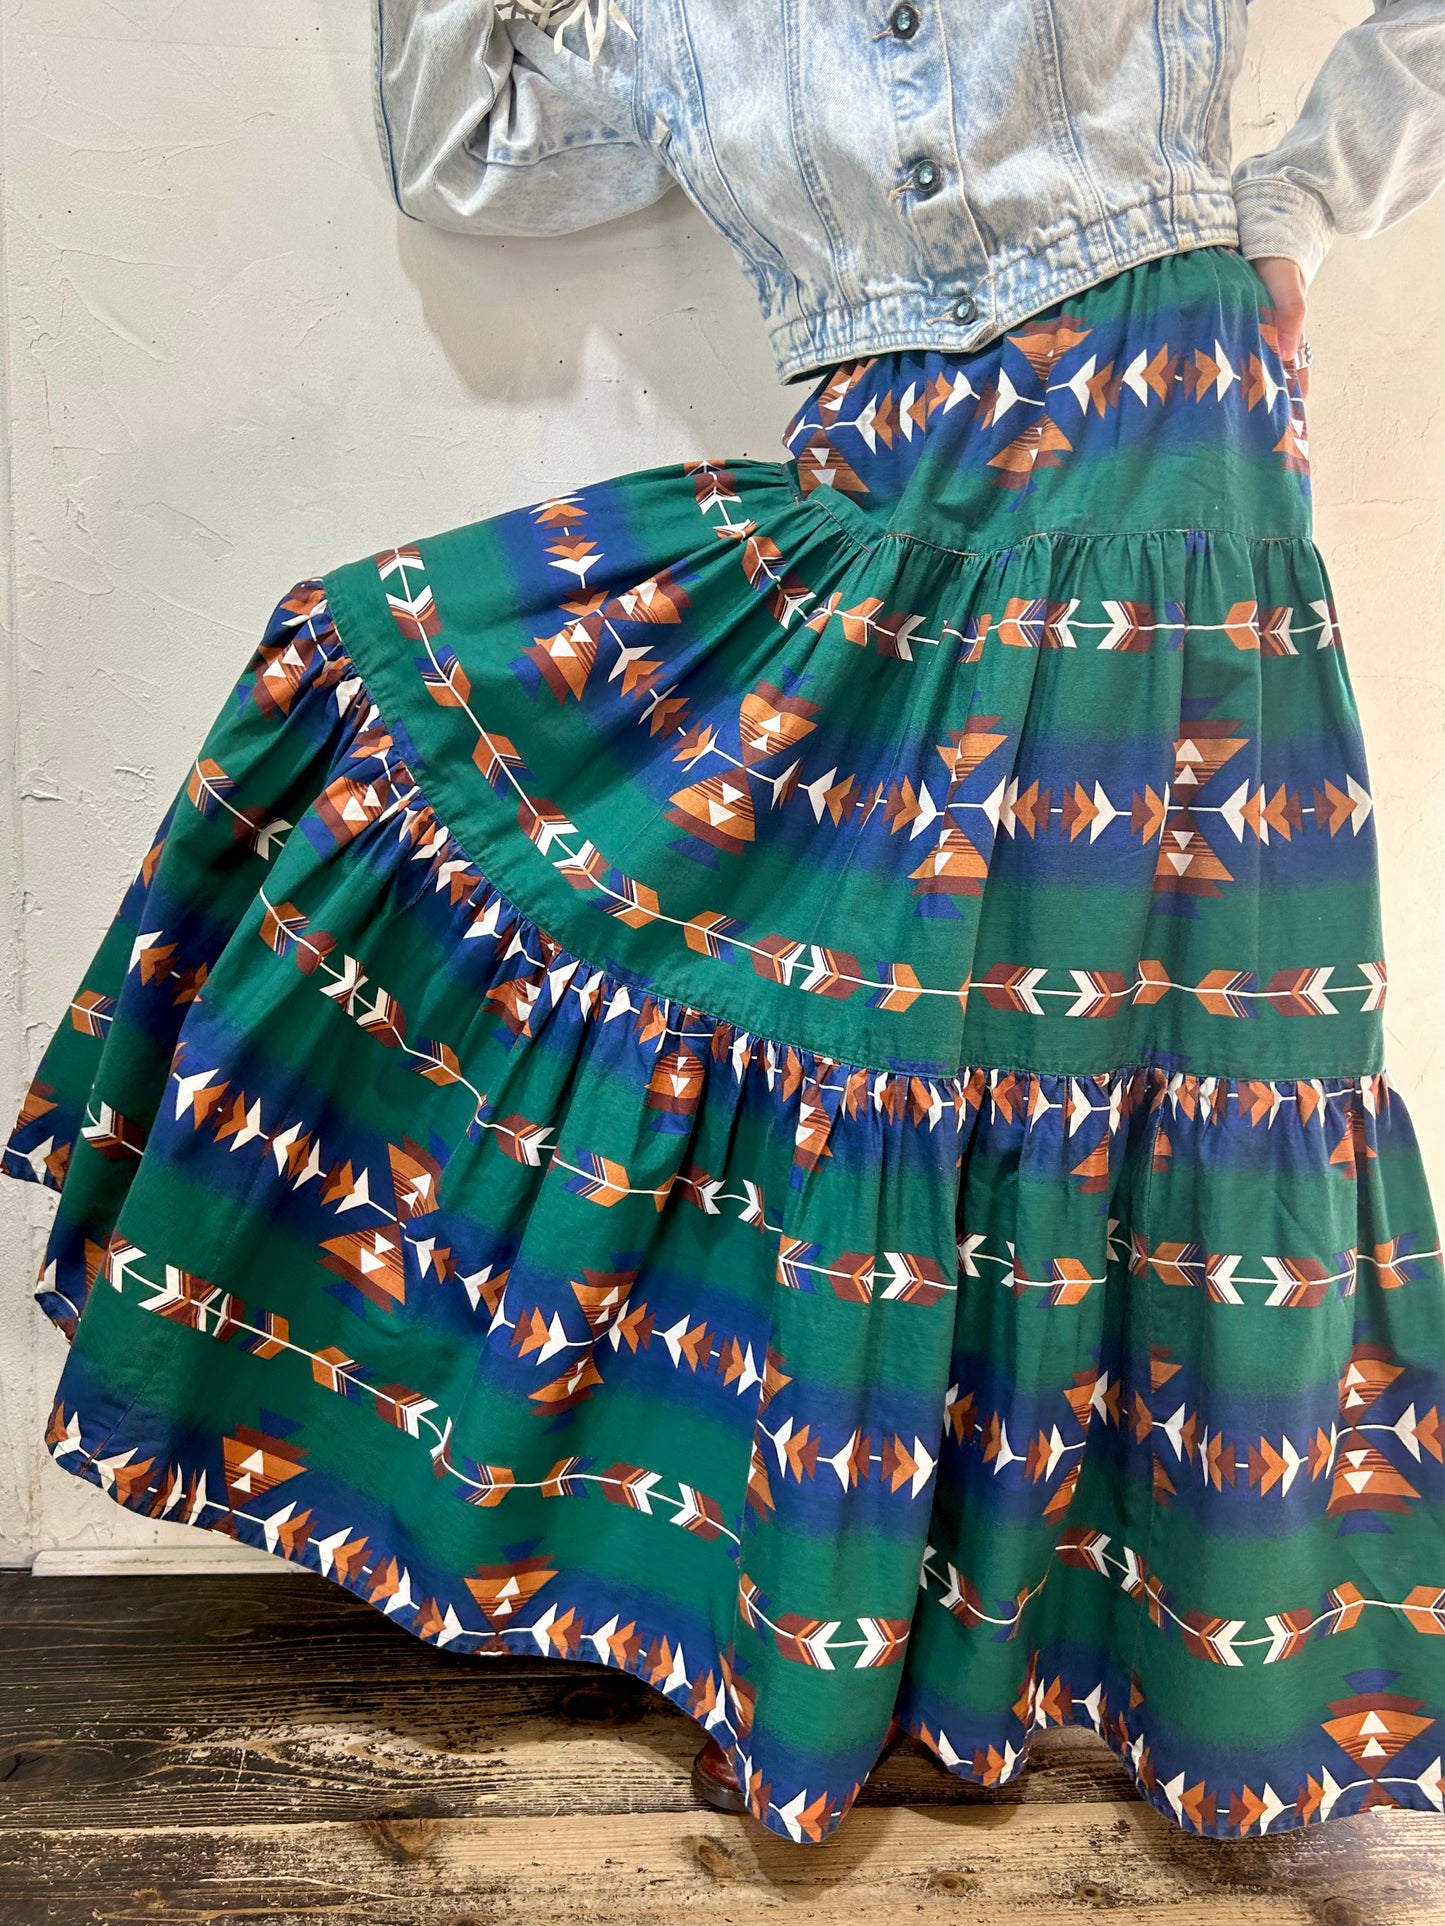 Vintage Tiered Skirt [J25262]